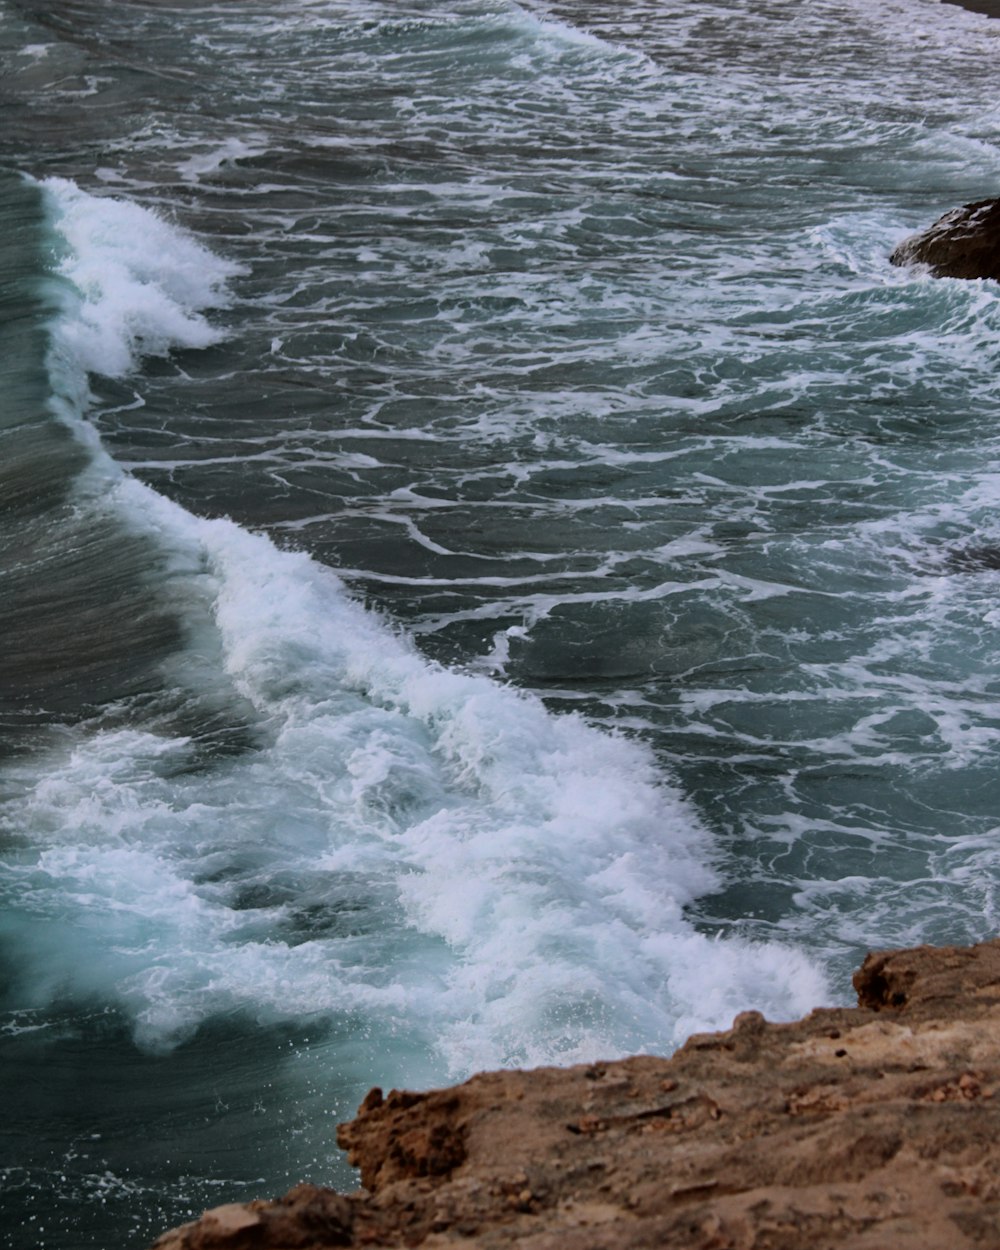 Les vagues de l’océan s’écrasent sur le rivage rocheux brun pendant la journée